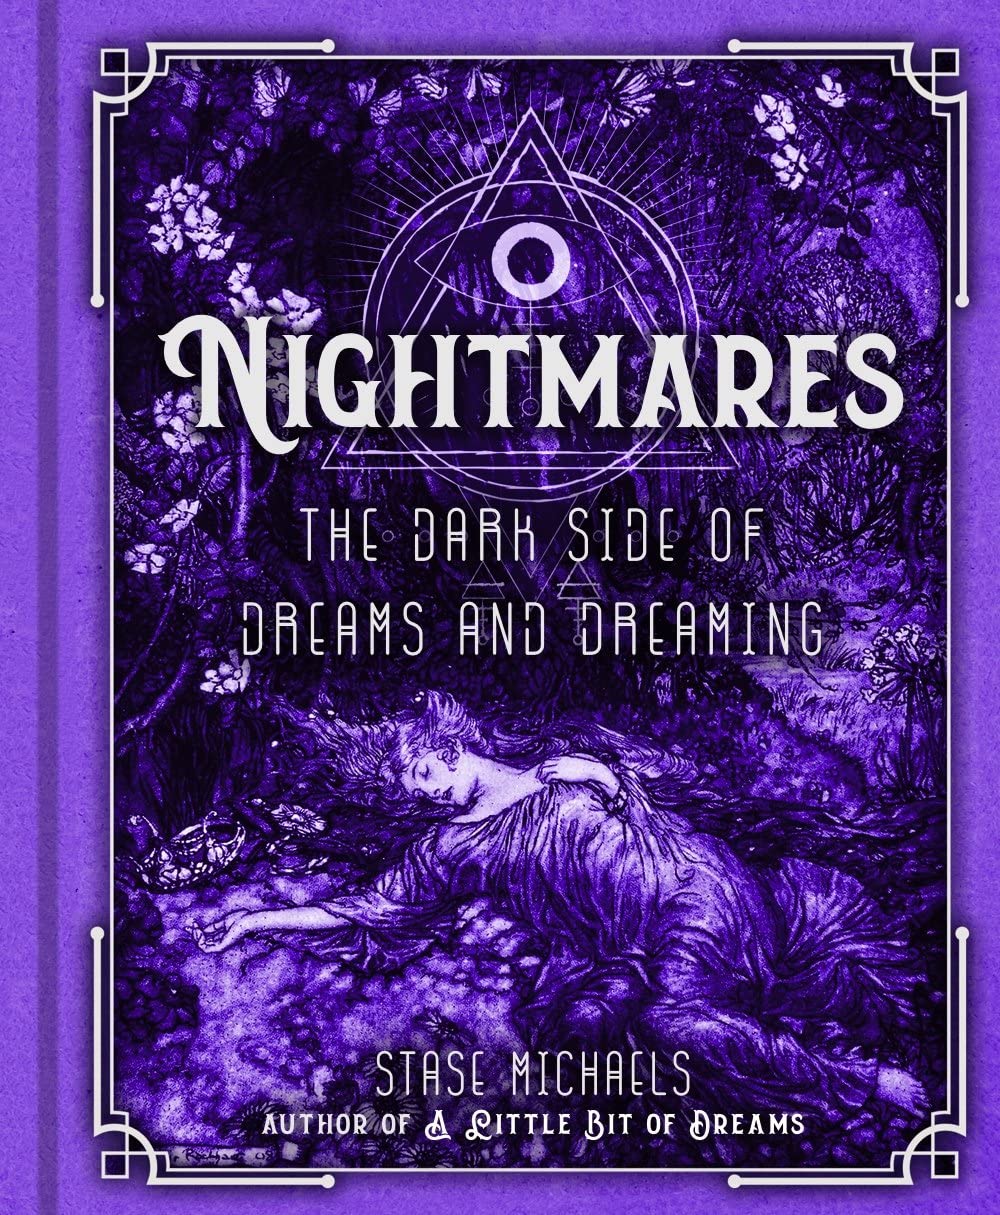 Nightmares Dark Side of Dreams & Dreaming by Stase Michaels